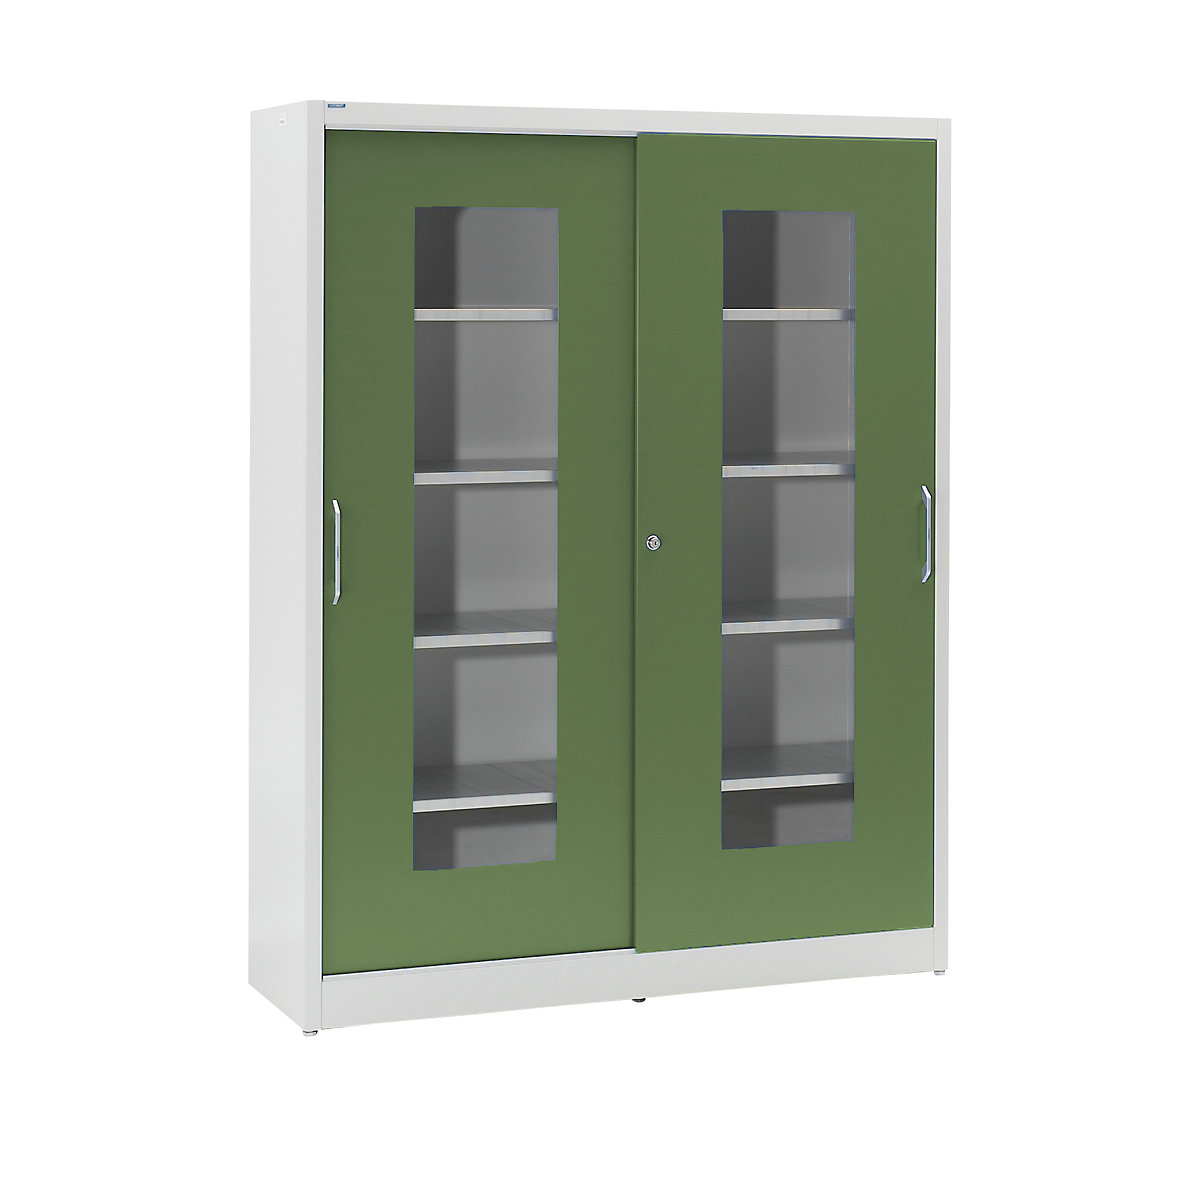 Armário de portas de correr com janela de visualização – mauser, com 2 x 4 prateleiras, AxL 1950 x 1500 mm, profundidade 600 mm, cor da porta verde reseda-5